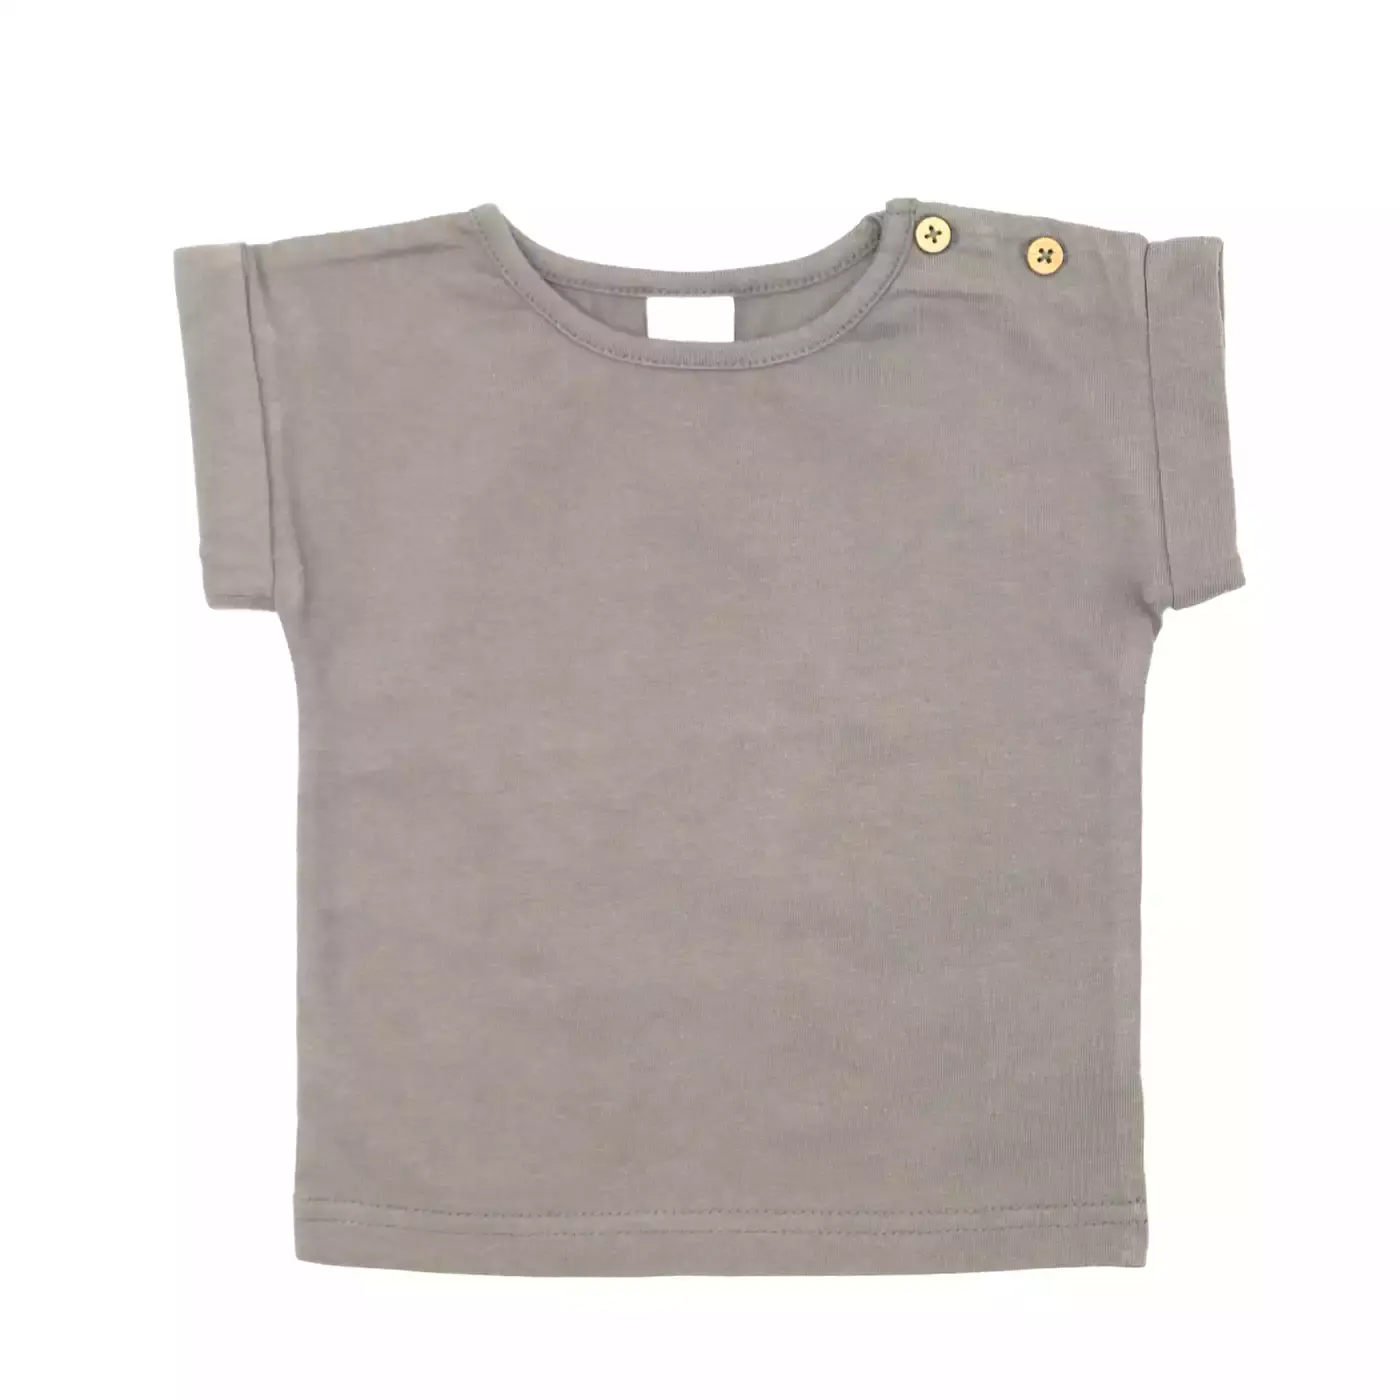 T-Shirt Basic Savannah LITTLE Grau Anthrazit 2006578448402 3